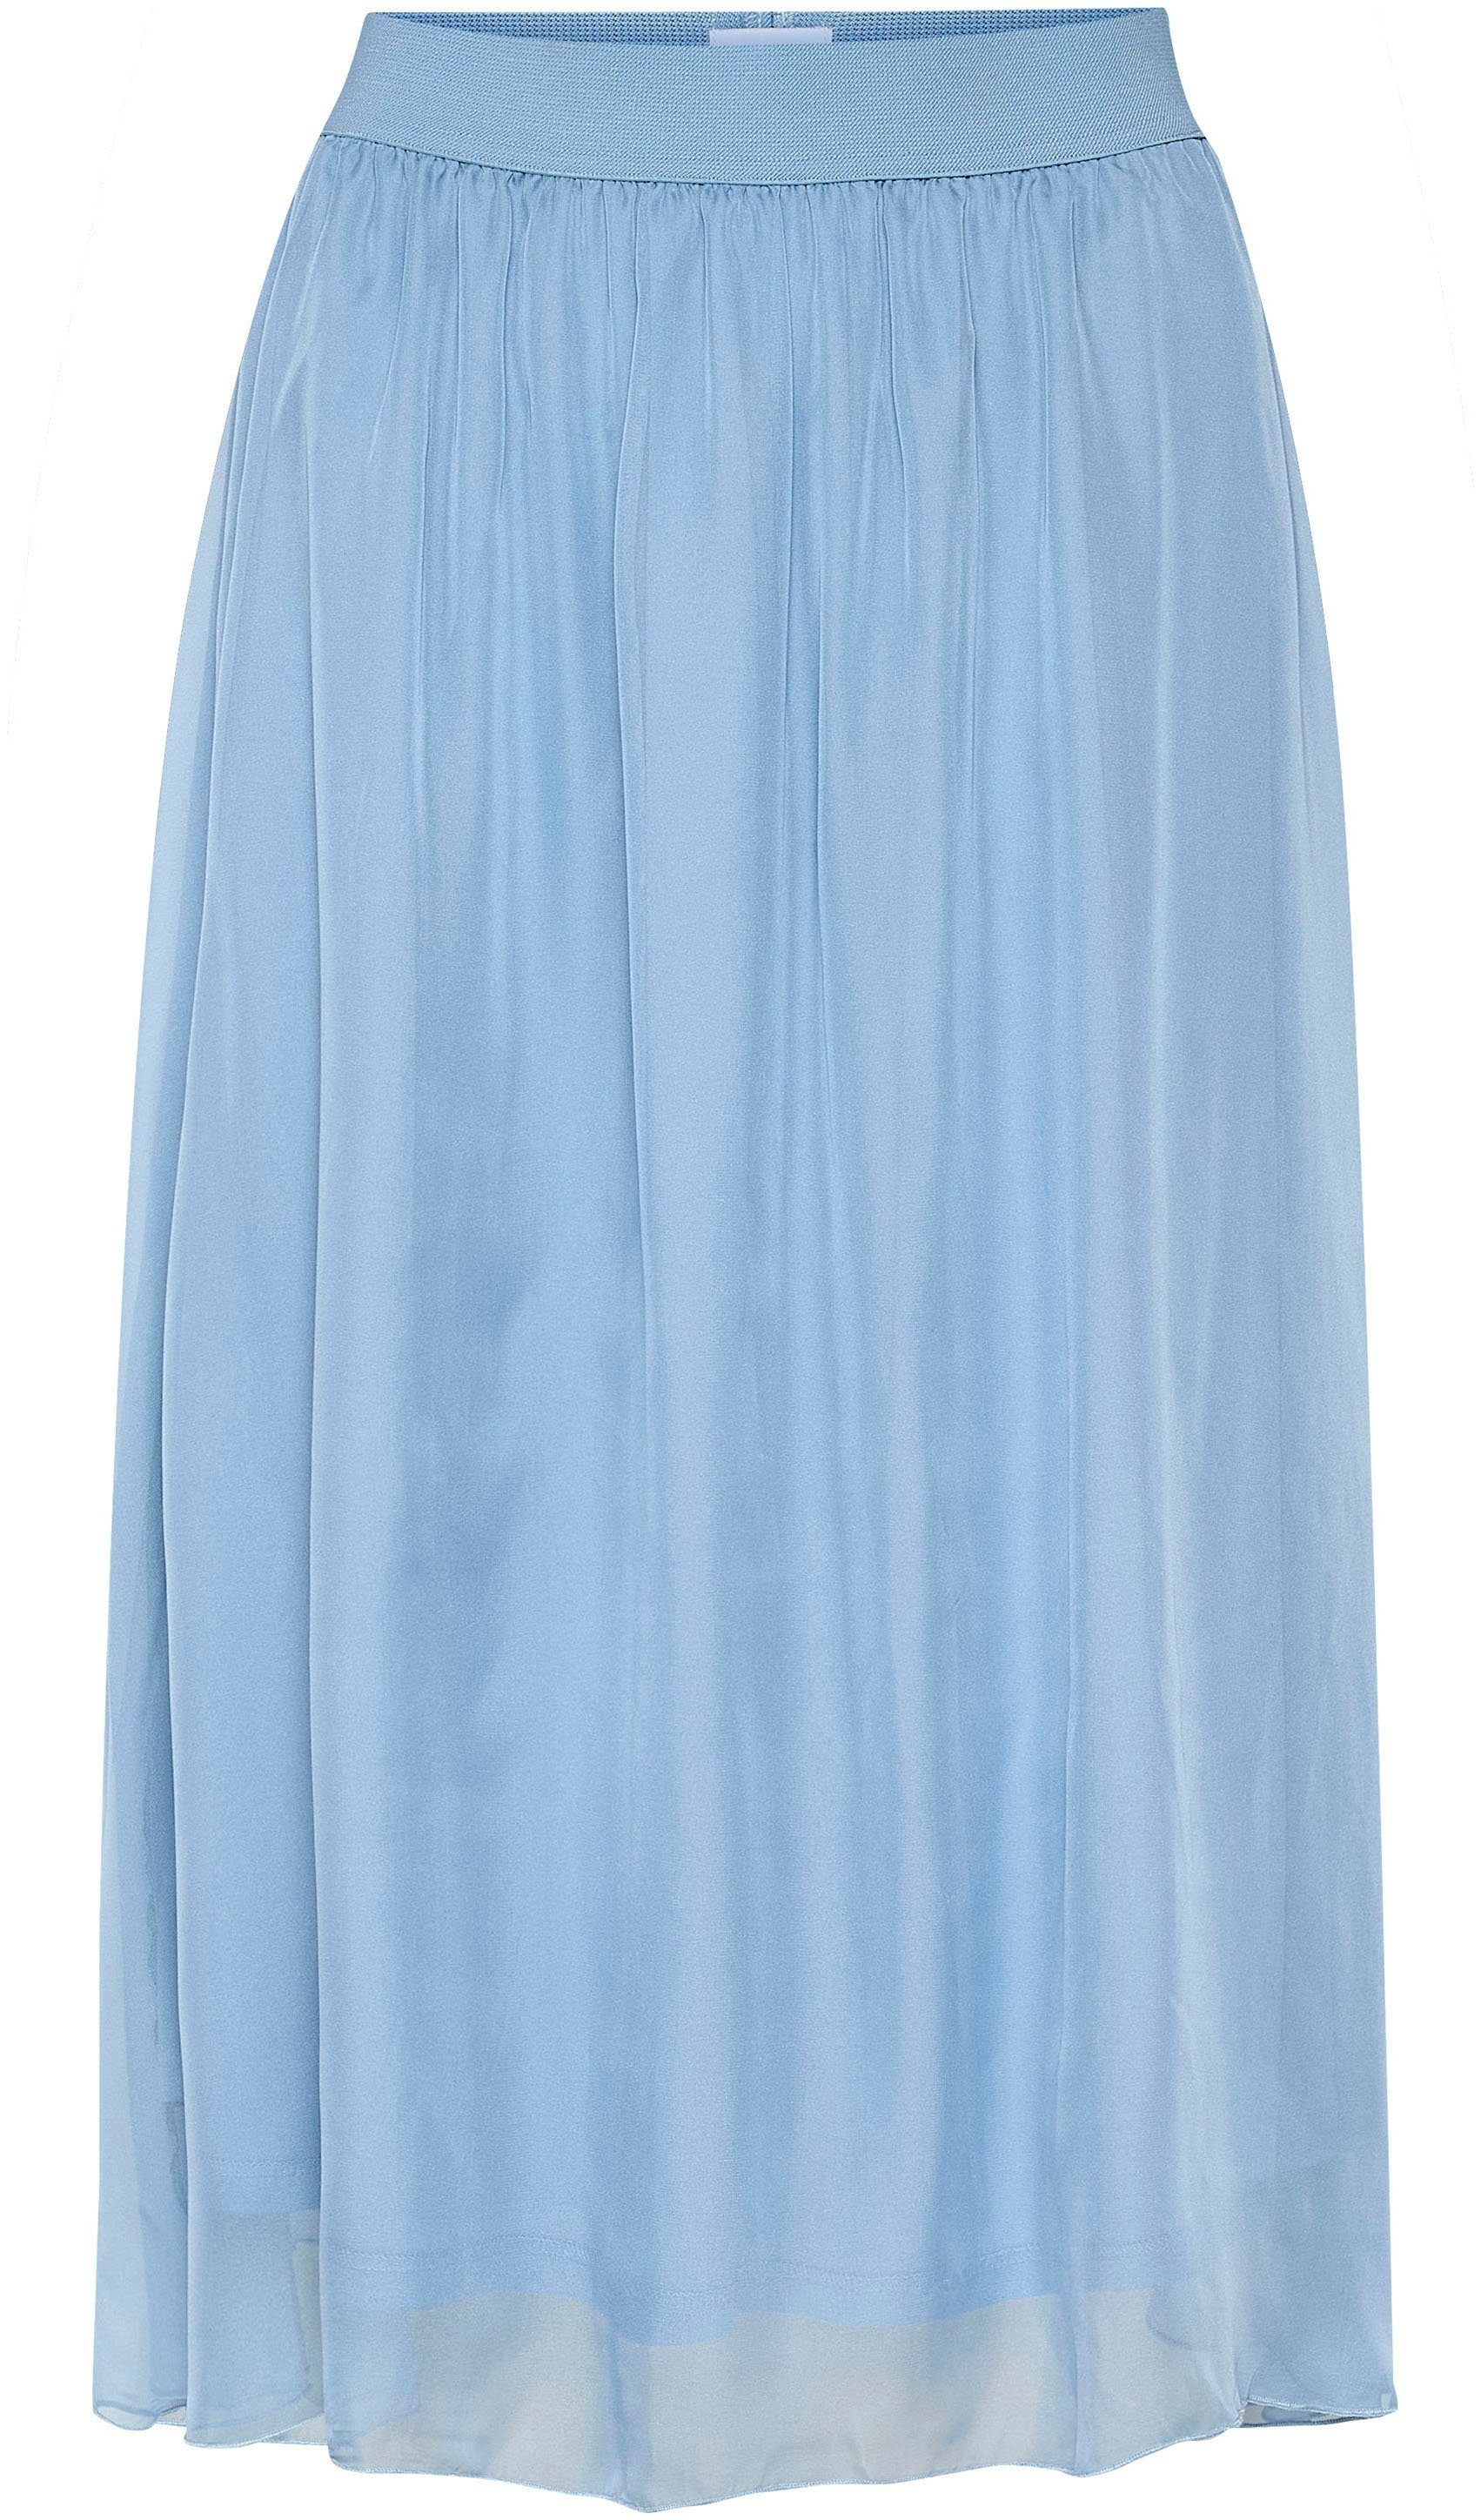 CoralSZ Maxirock Tropez Ashley Saint Skirt Blue